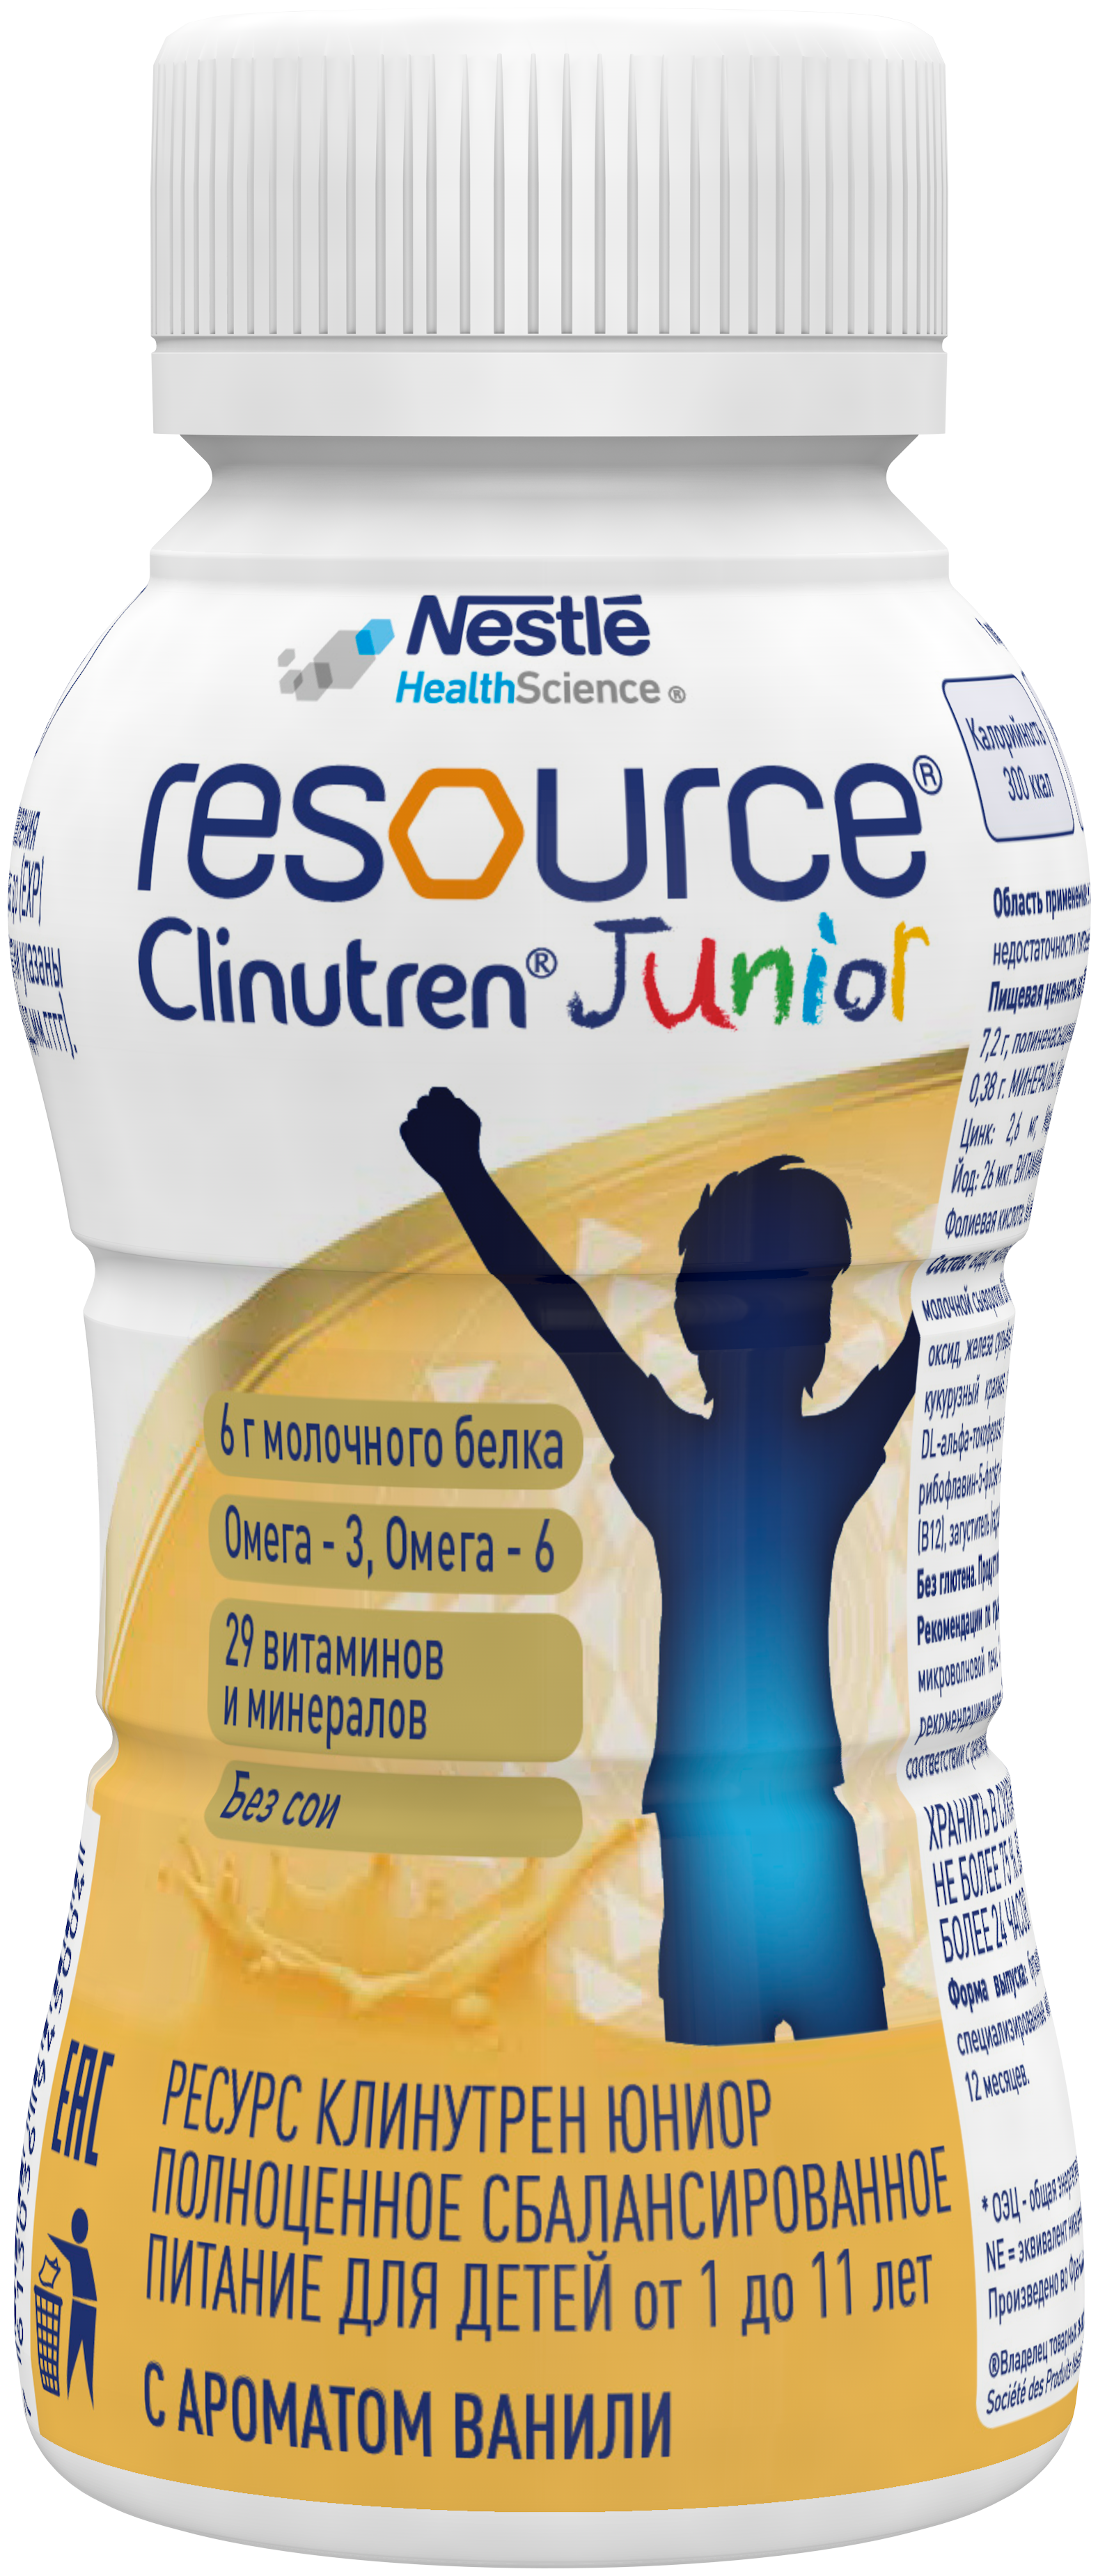 Ресурс юниор. Смесь resource Clinutren Junior. Ресурс Клинутрен Юниор 200 мл. Клинутрен Джуниор 200 мл. Nestle resource Clinutren Junior.